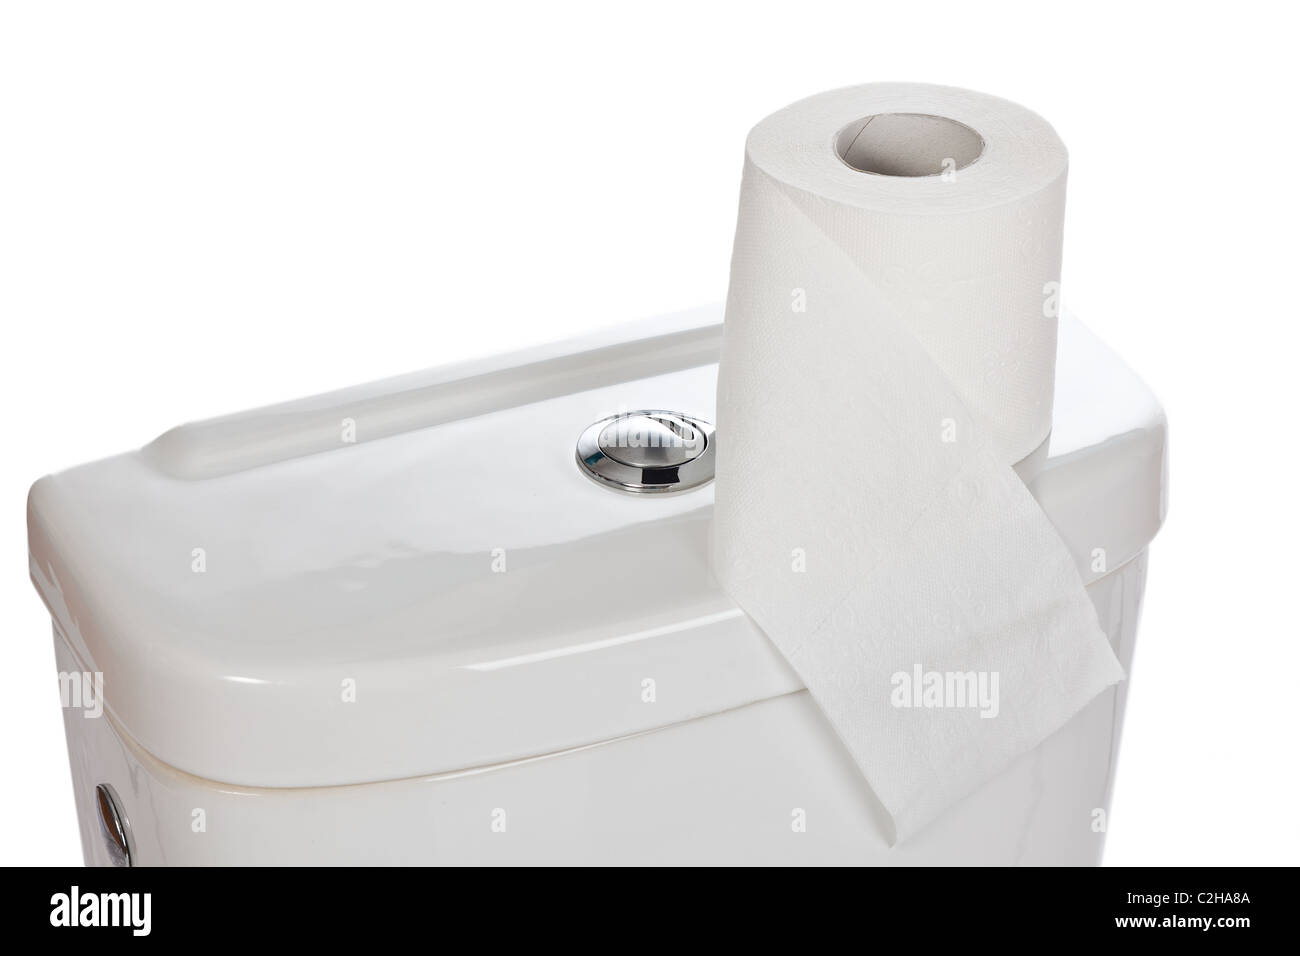 the toilet paper on ceramic toilet Stock Photo